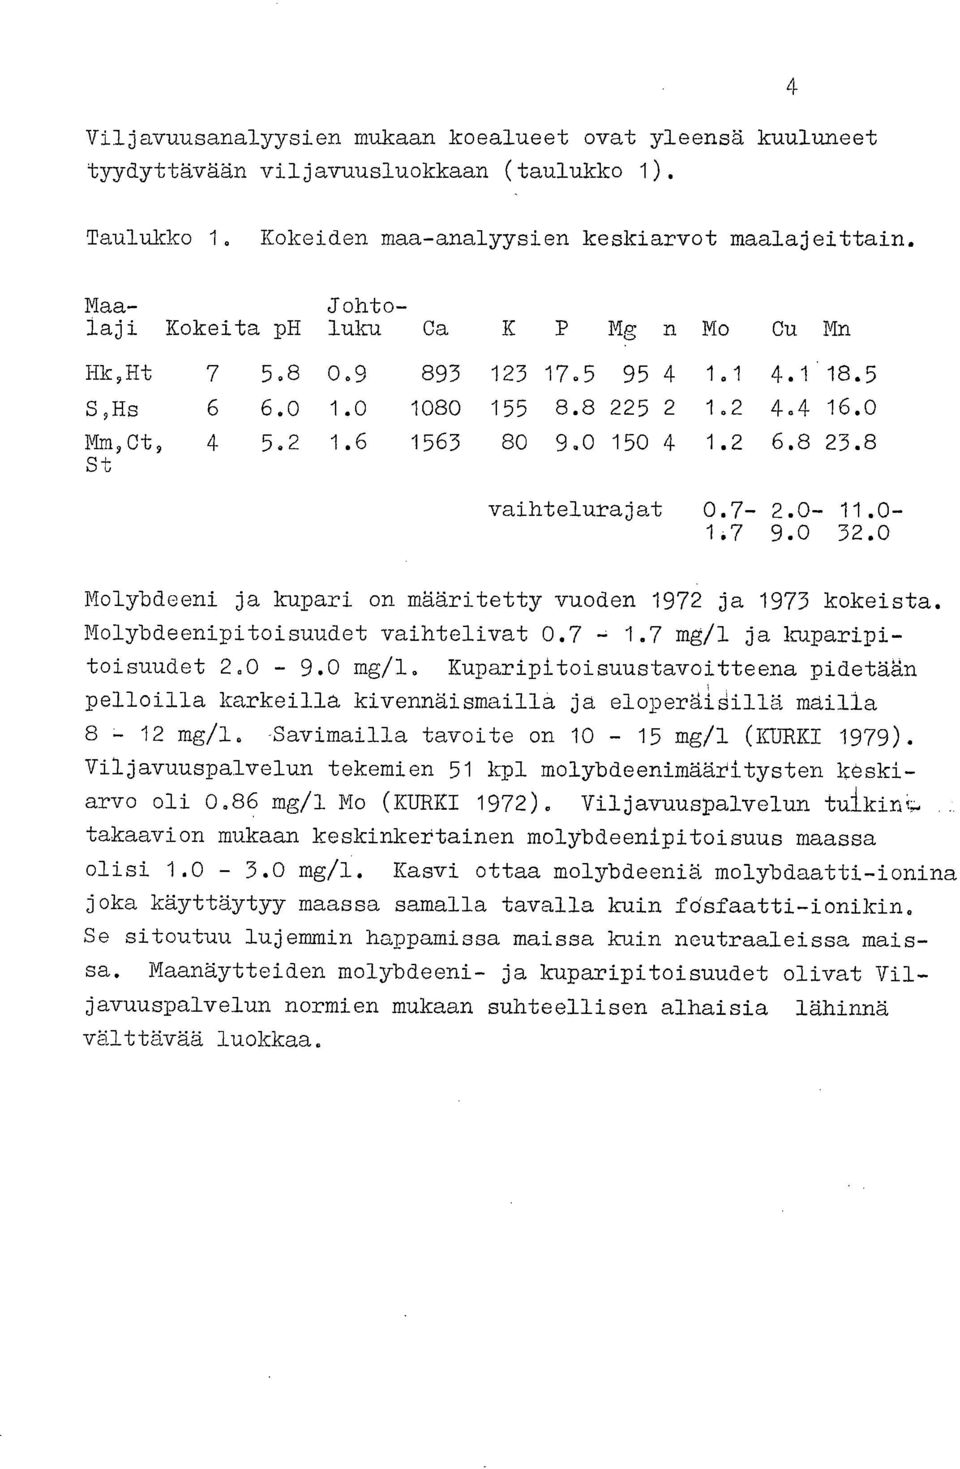 8 St vaihtelurajat 0.7-2.0-11.0-1.7 9.0 32.0 Molybdeeni ja kupari on määritetty vuoden 1972 ja 1973 kokeista. Molybdeenipitoisuudet vaihtelivat 0.7 1.7 mg/1 ja kuparipitoisuudet 2.0-9.0 mg/l.